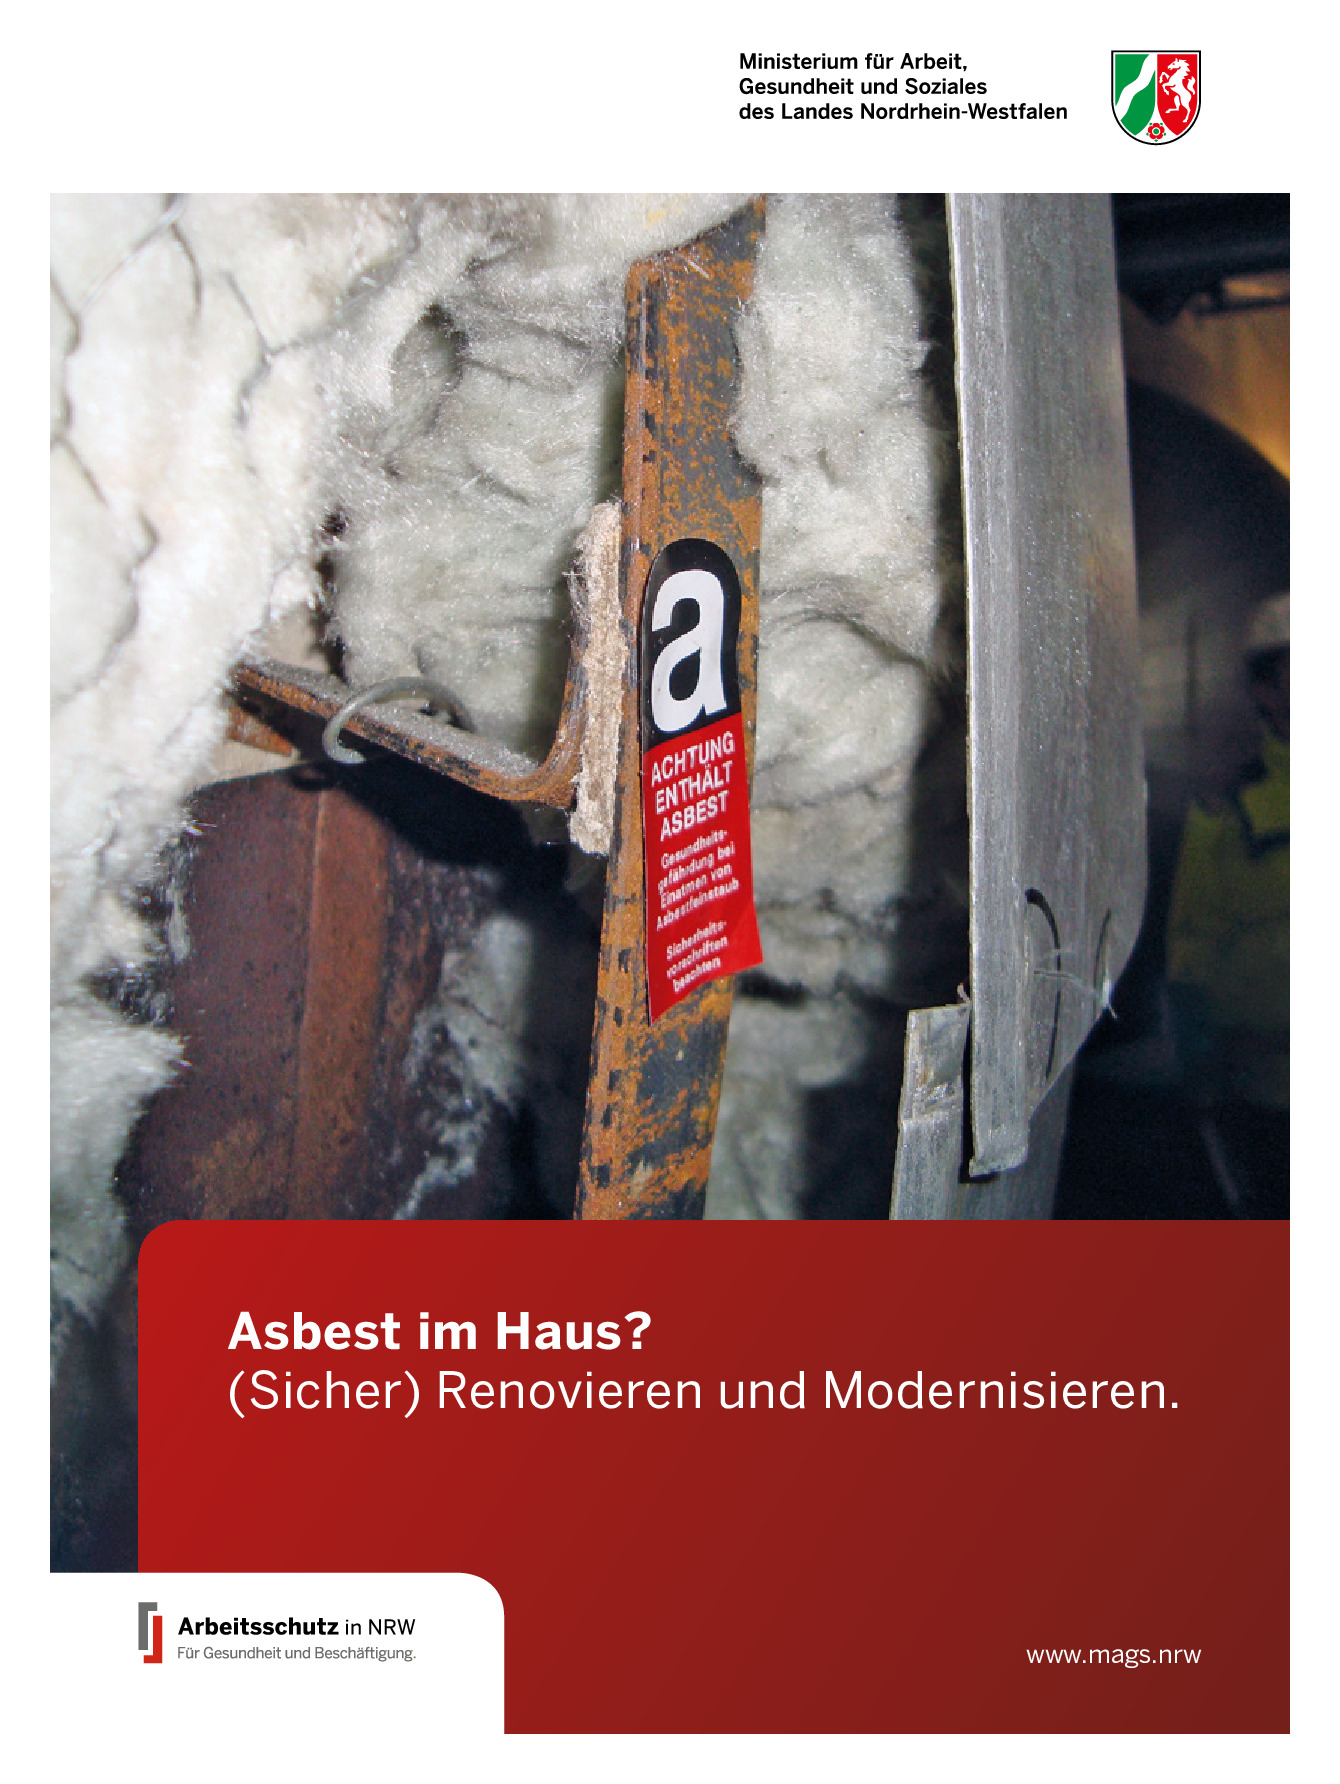 29+ nett Bild Asbest Im Haus Woran Erkennt Man